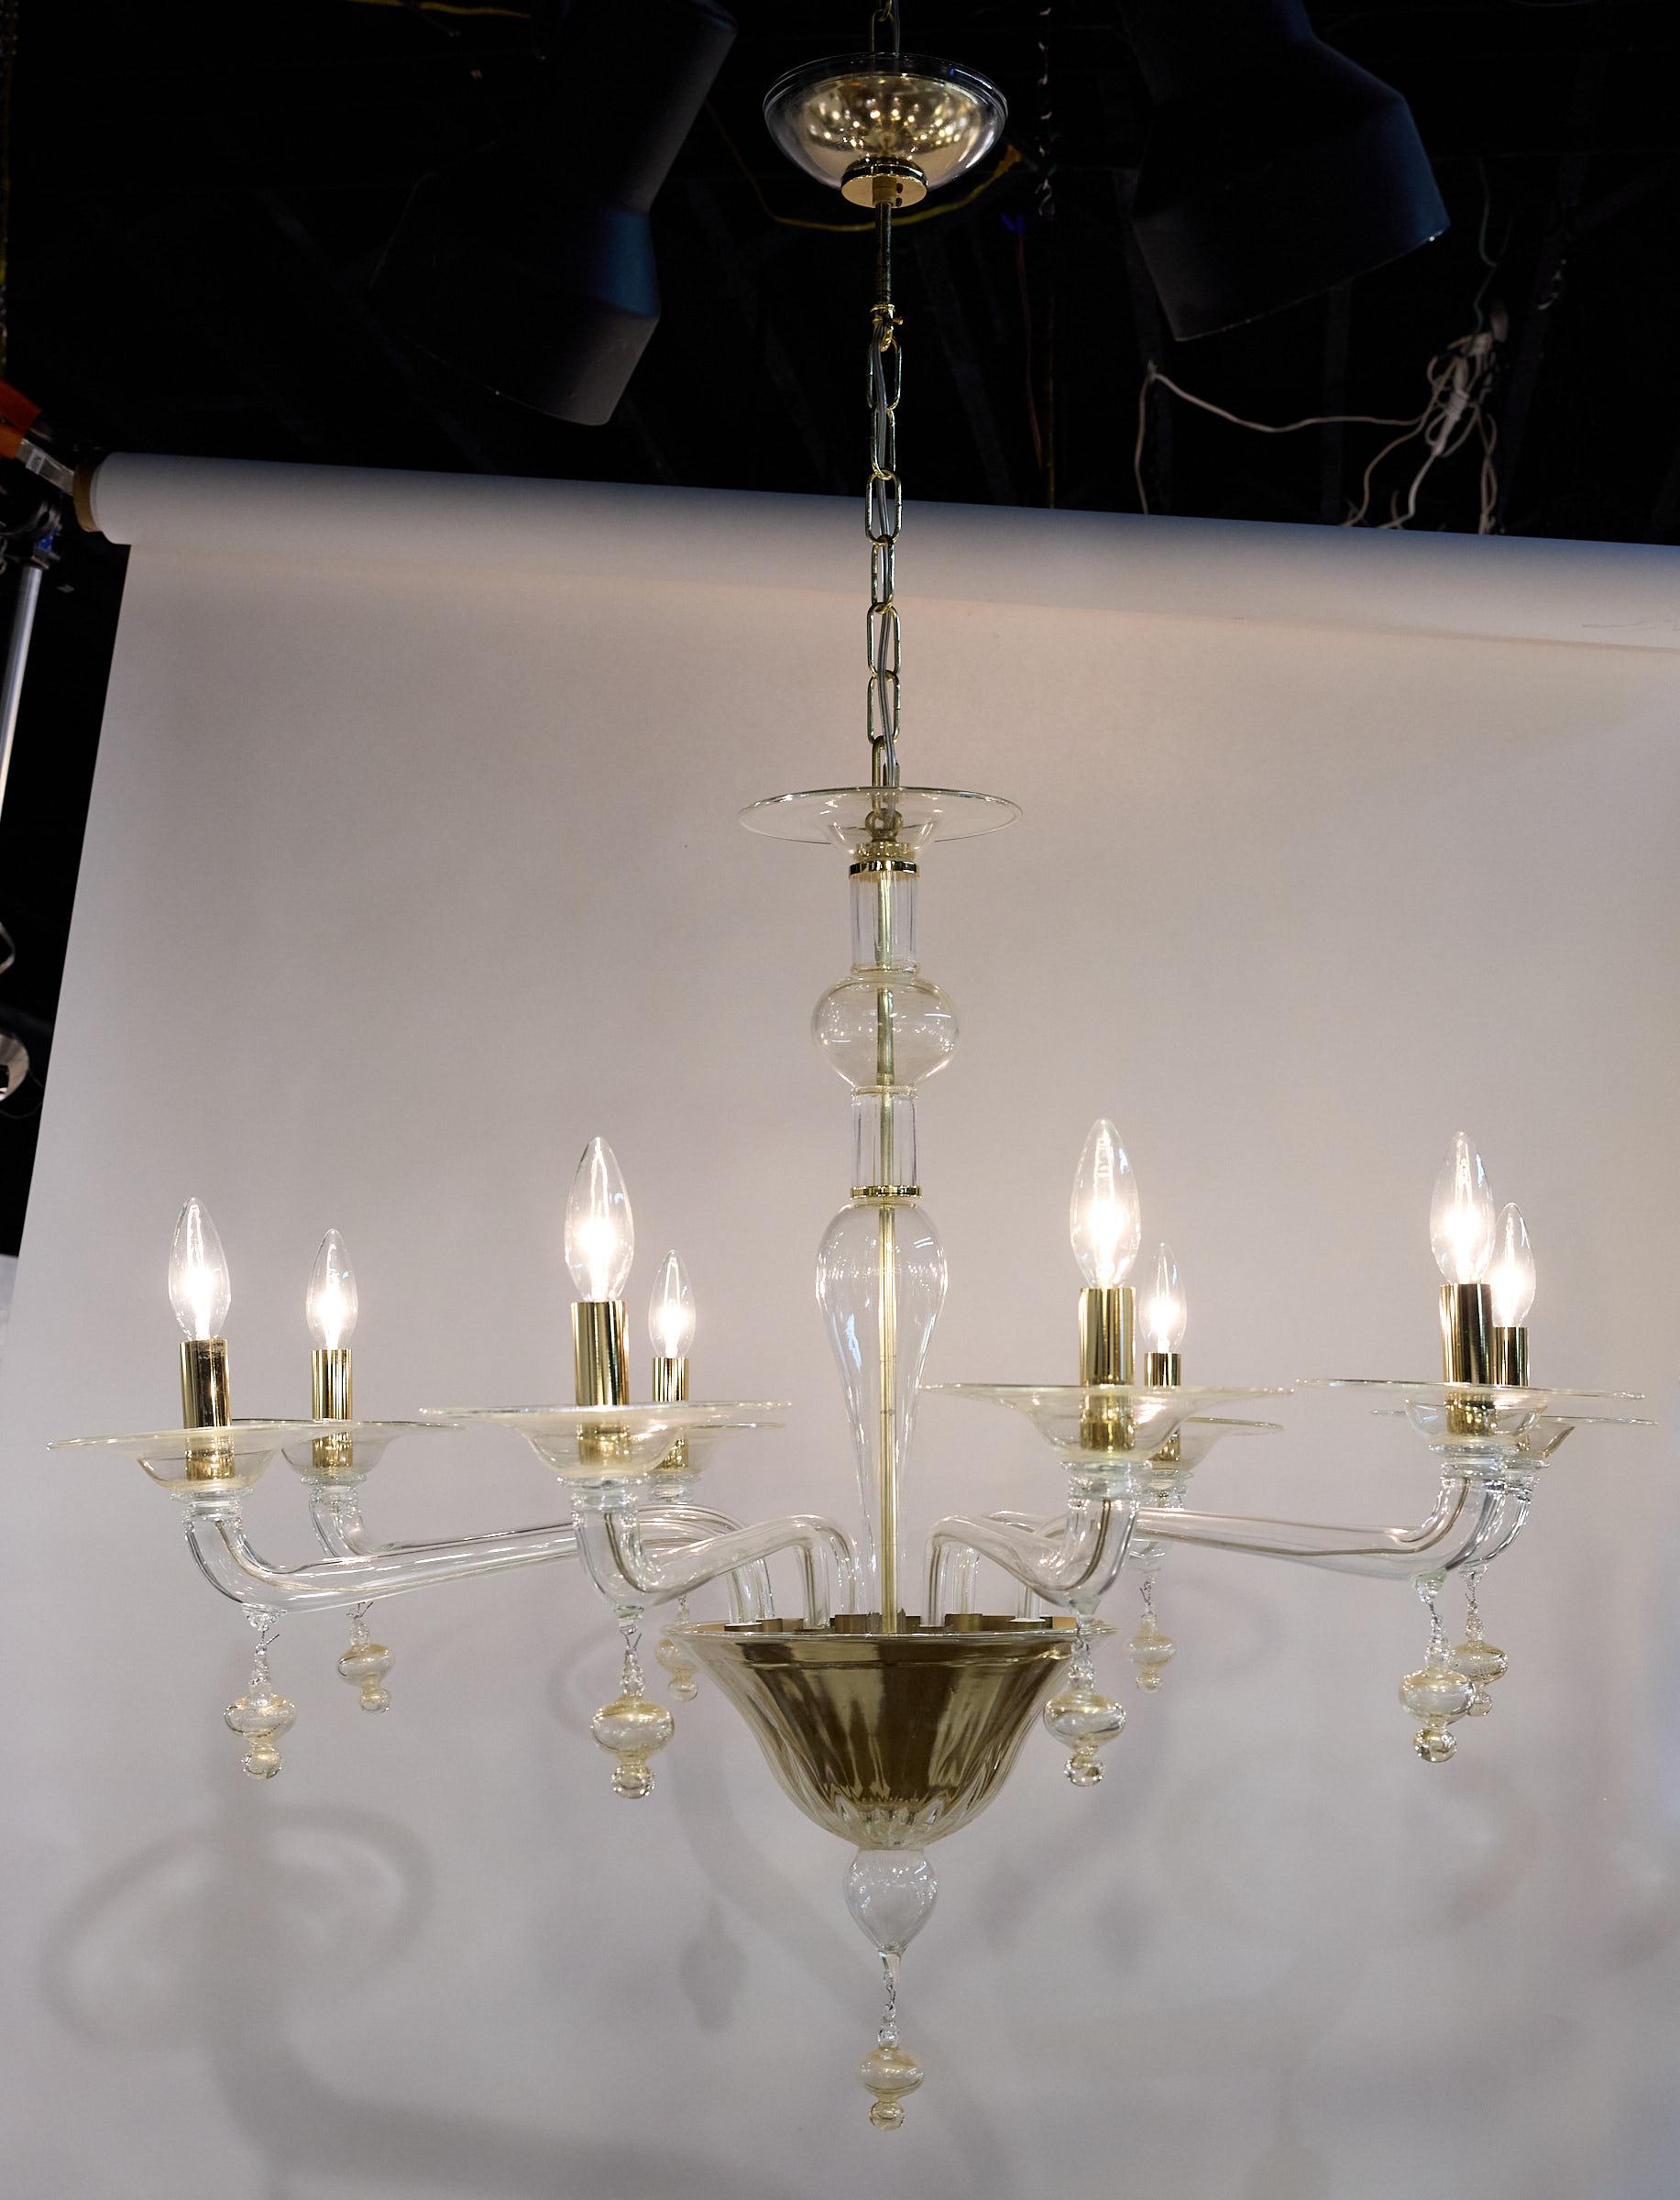 Élégant lustre en verre de Murano du 20e siècle, composé de huit bras supportant des chandeliers en laiton. Le luminaire est composé de verre clair, de verre moucheté d'or et d'accents en laiton. 

Un baldaquin assorti et une chaîne en or sont